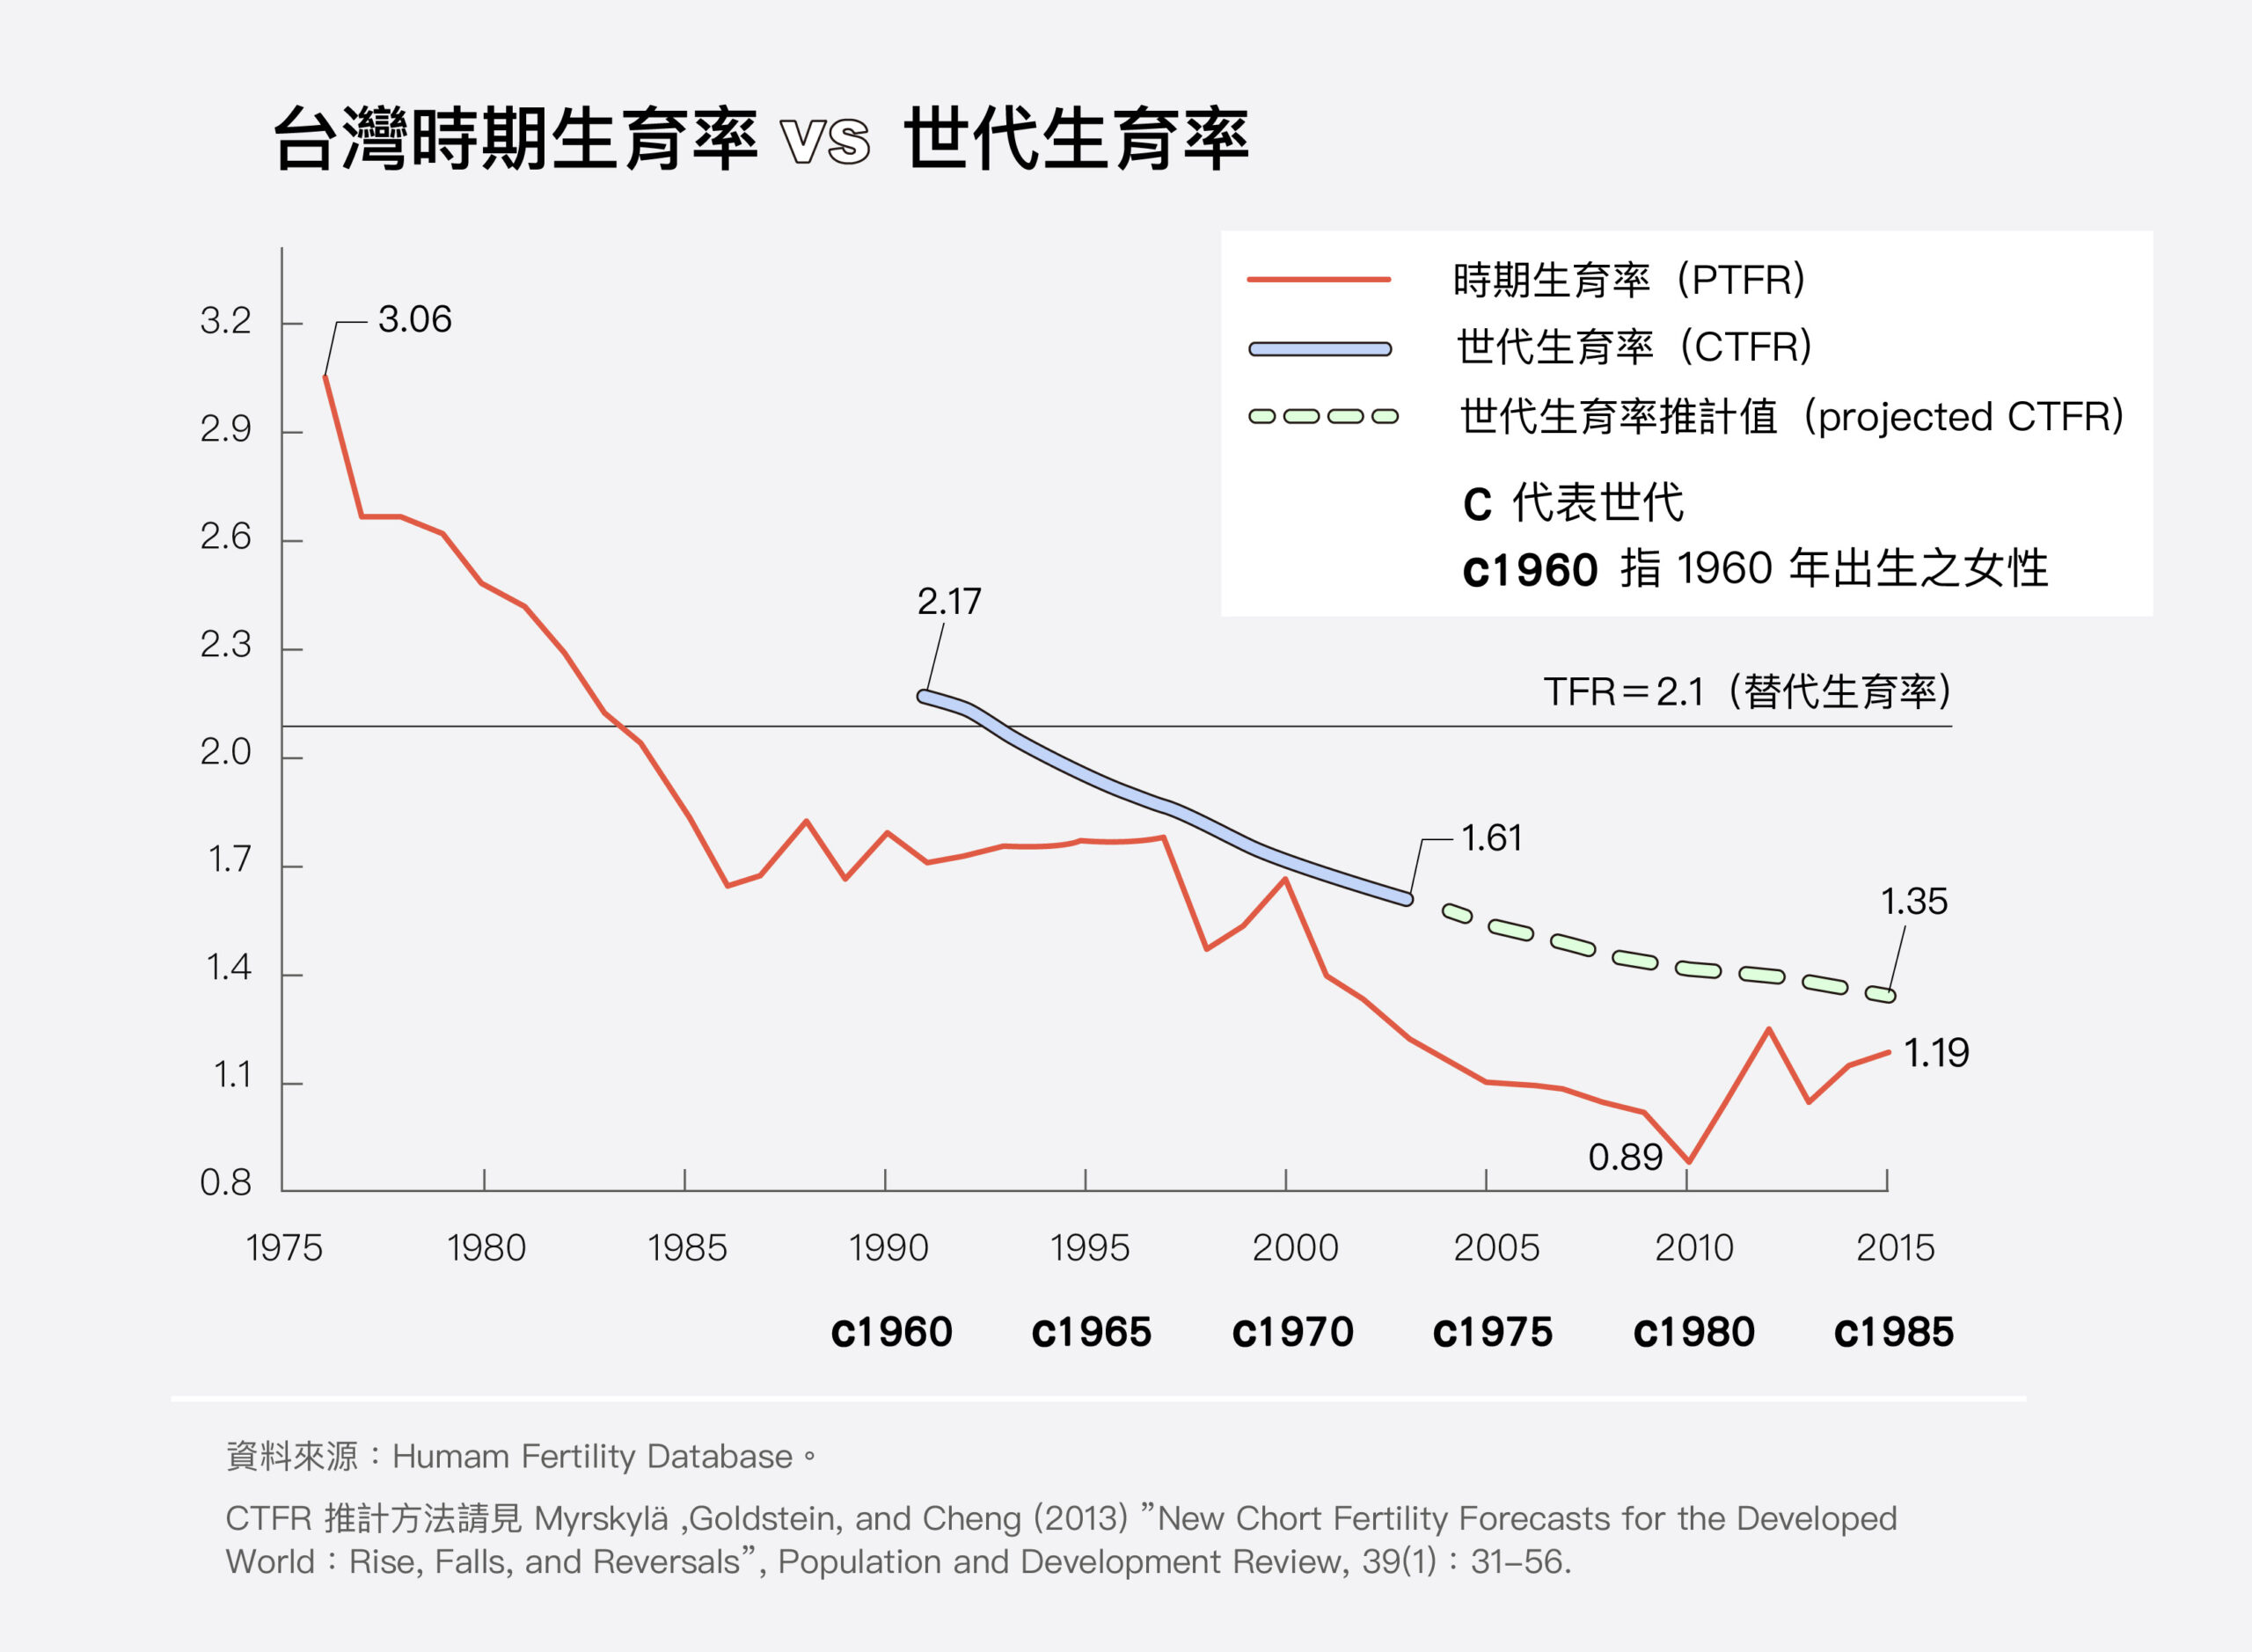 單看時期生育率，臺灣 1985 年已跌至 2 以下；但世代生育率一直到 1965 年世代才低於 2 人。PTFR 呈現的只是單一時點的生育概況，必須同時檢視真實世代的 CTFR，才能分析低生育率的形成主因。圖|研之有物(資料來源│鄭雁馨)